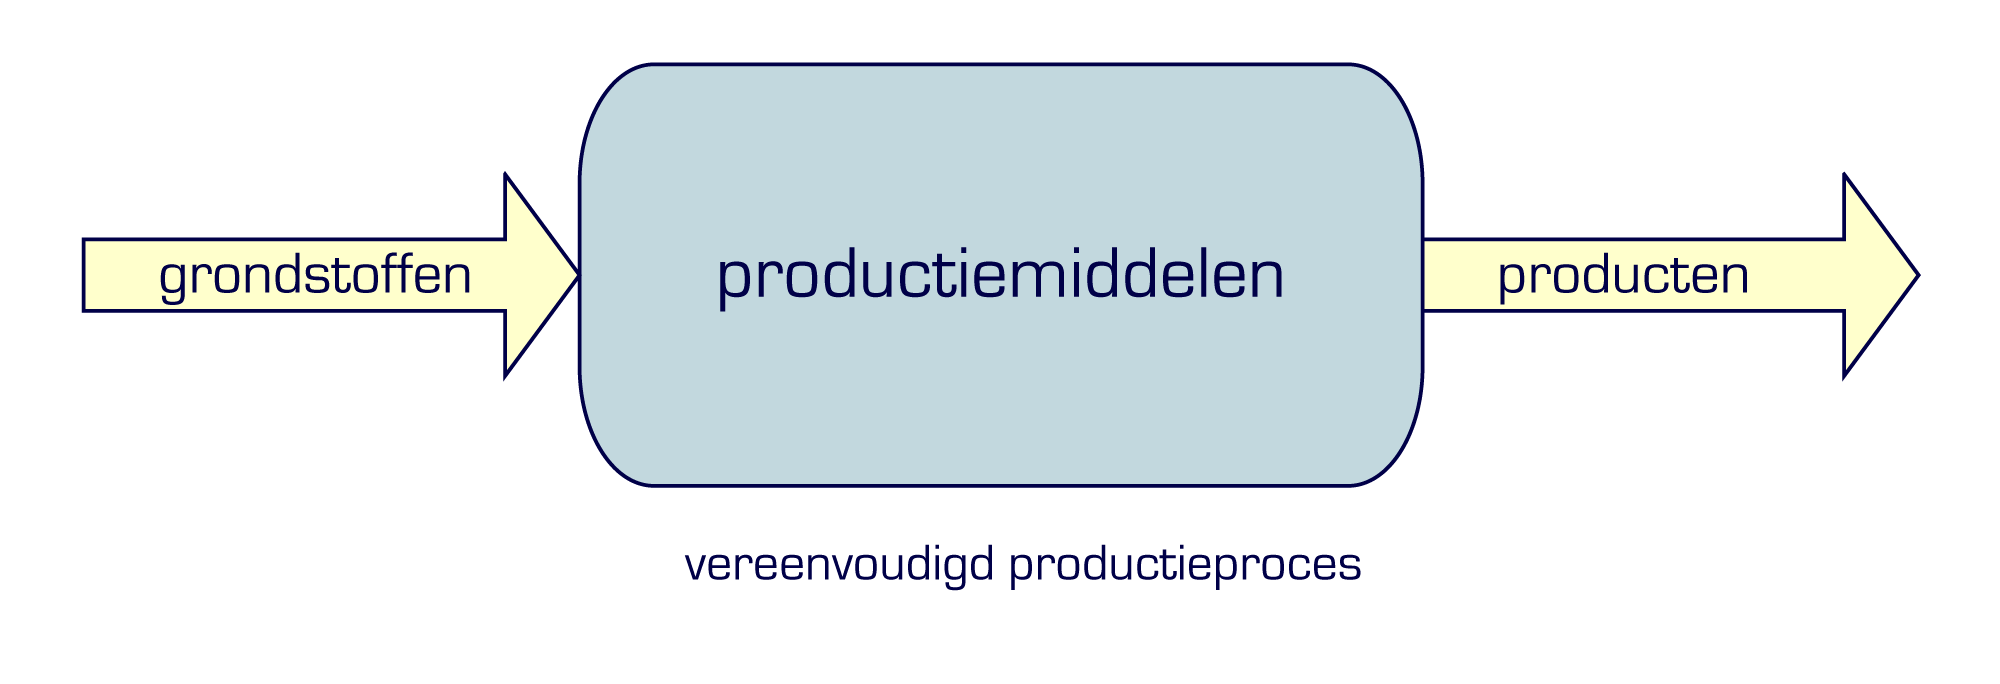 6 productieproces